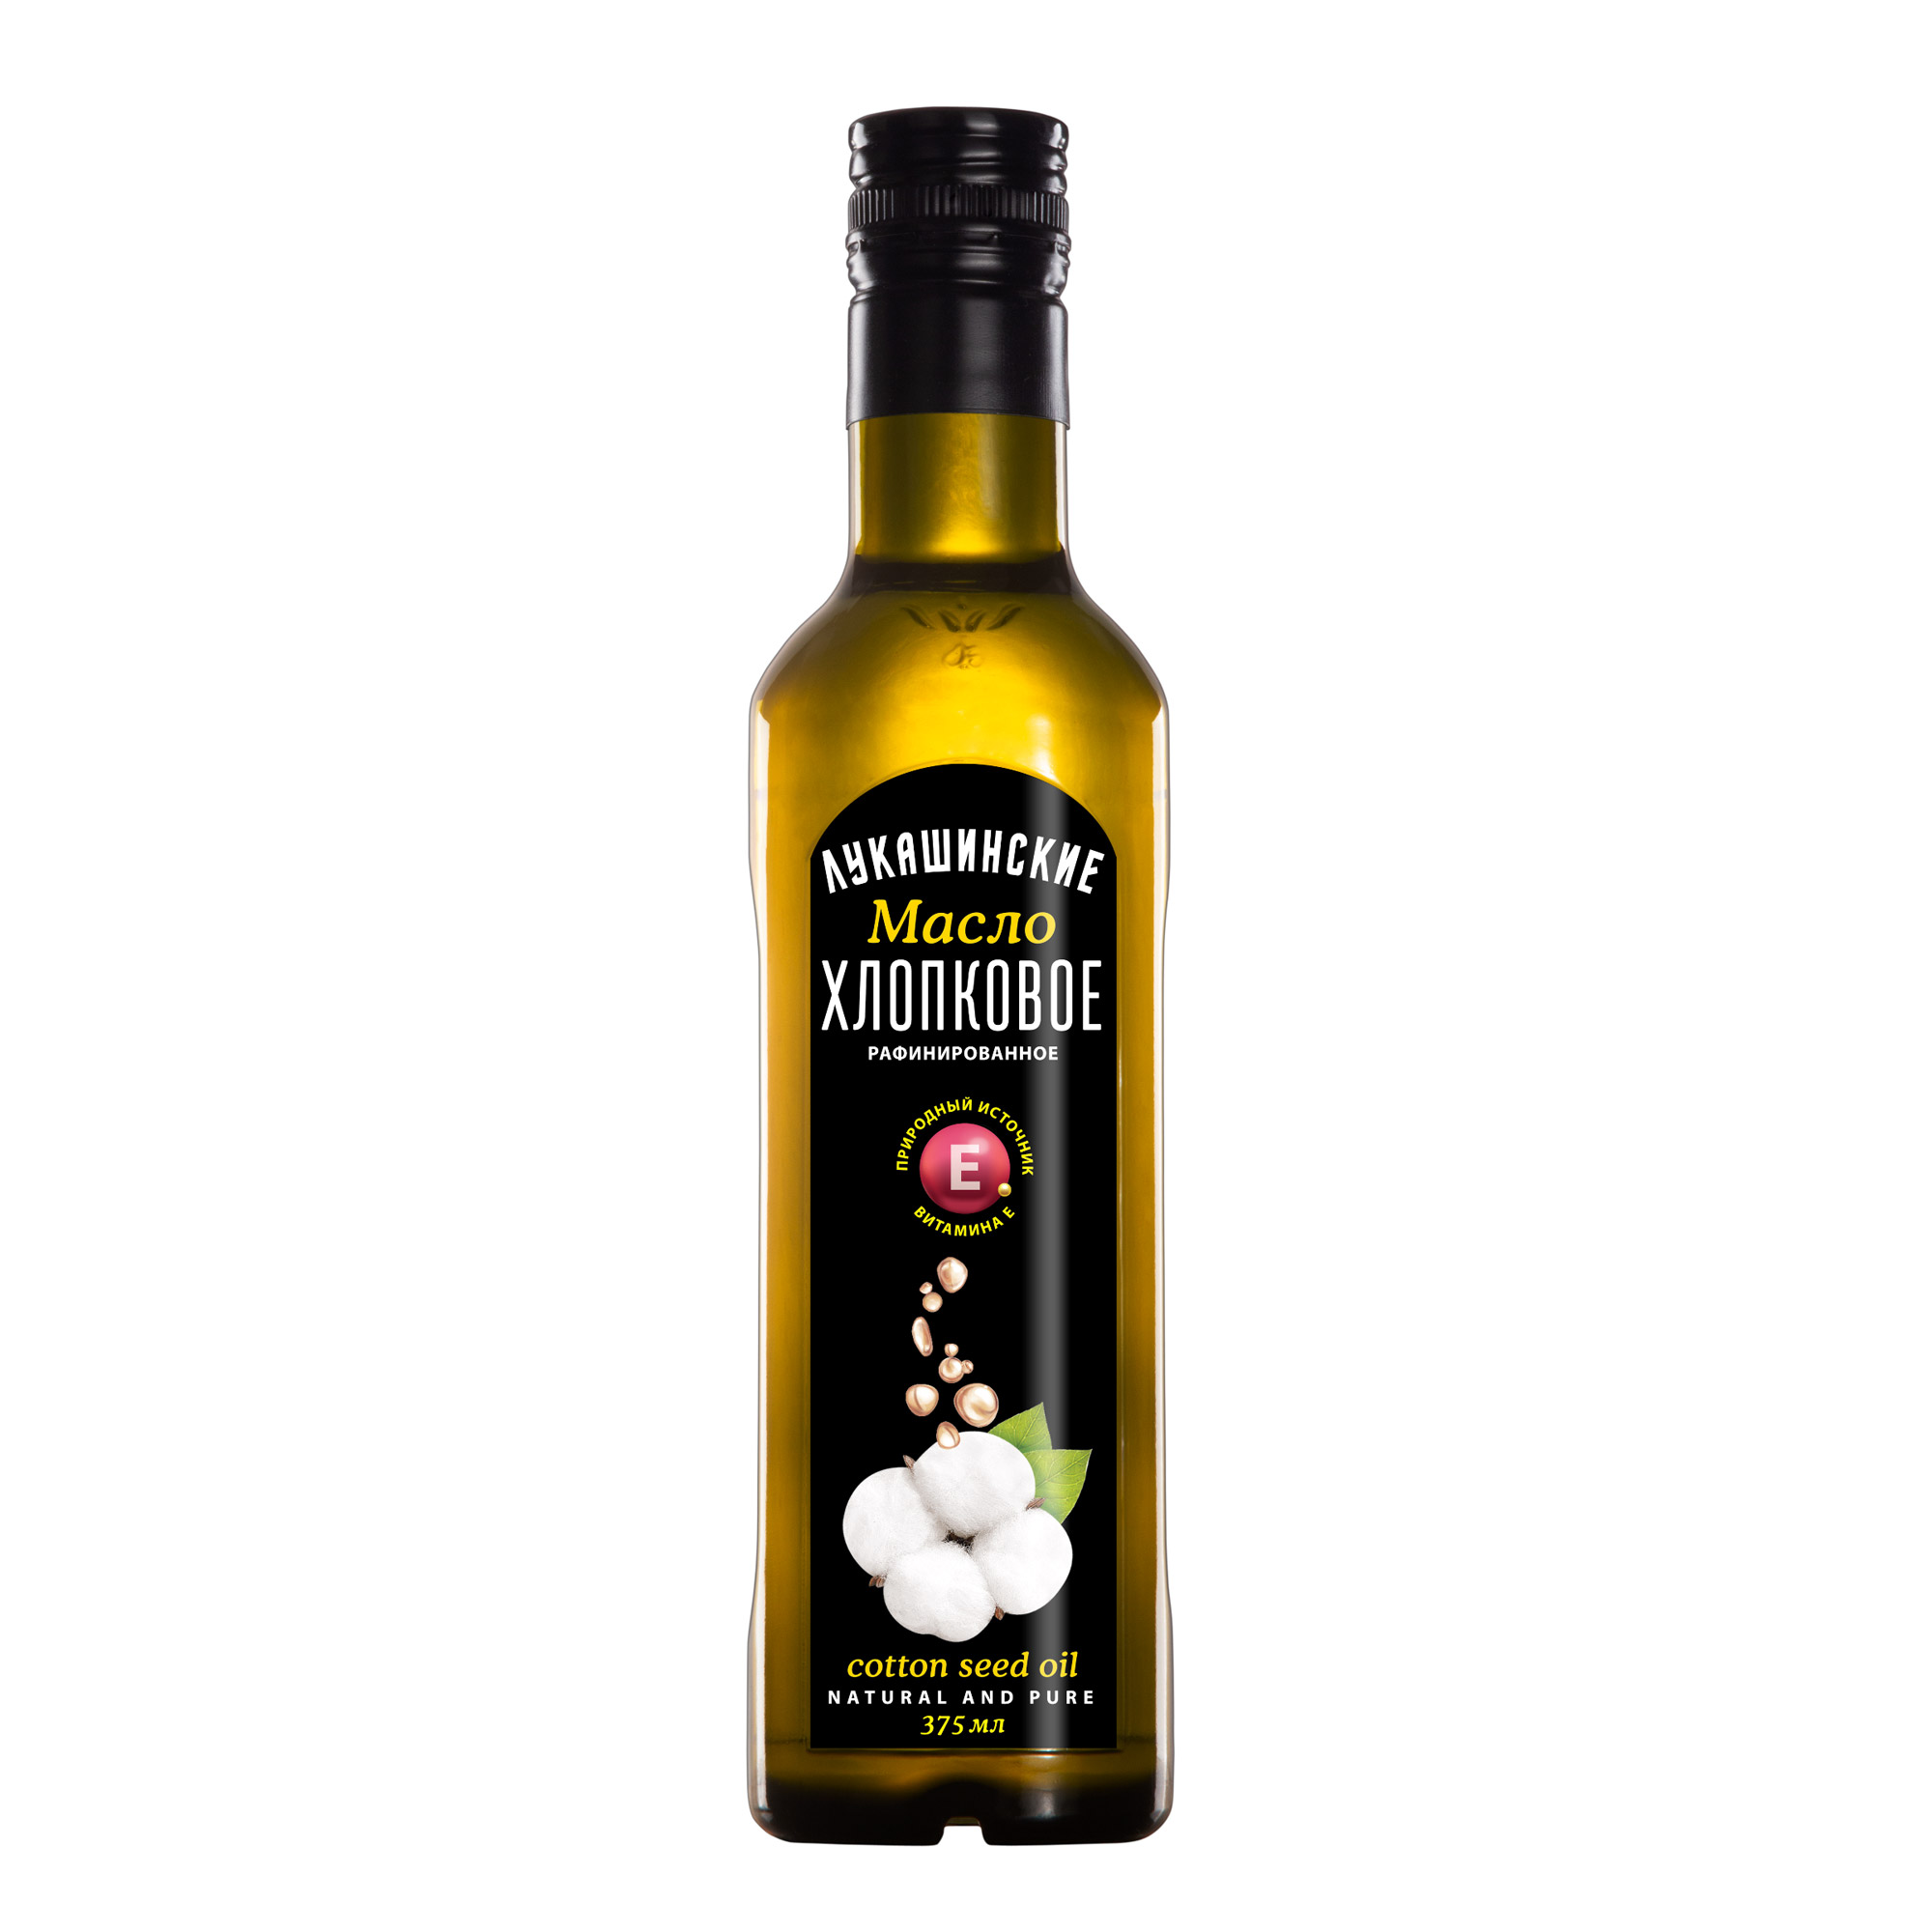 Масло Лукашинские хлопковое, 375 мл масло оливковое borges с жареным чесноком 0 2 л стеклянная бутылка